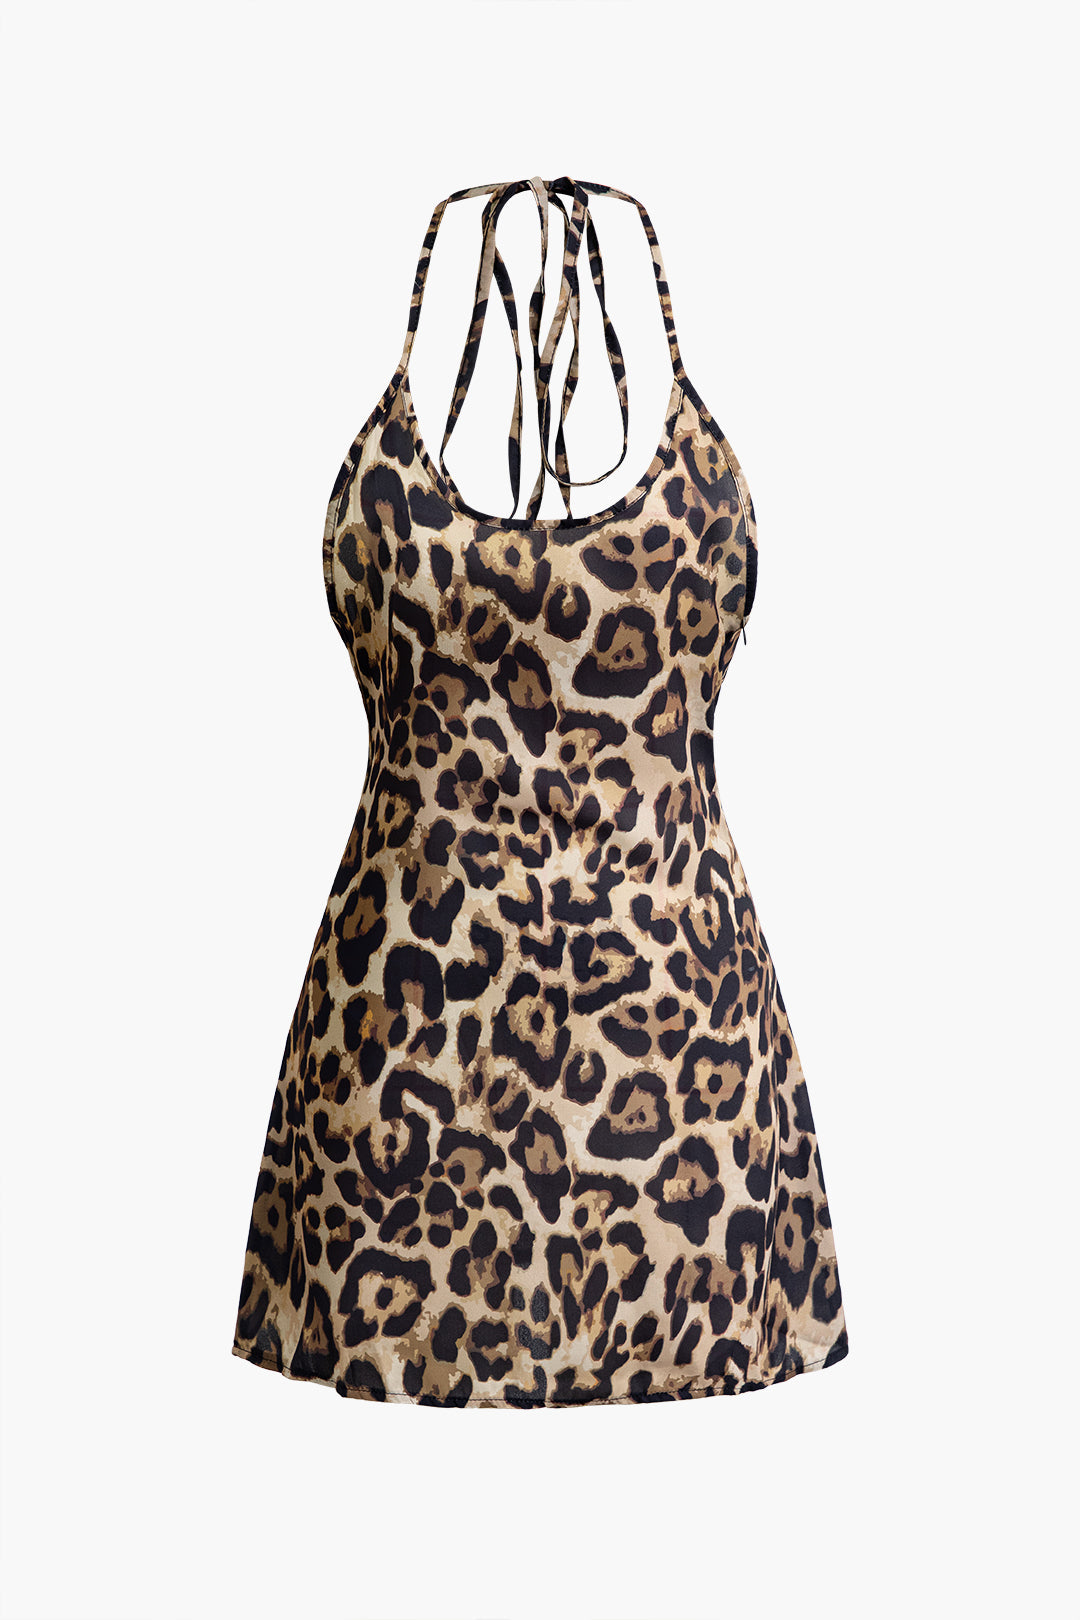 Leopard Print Tie Halter Backless Mini Dress